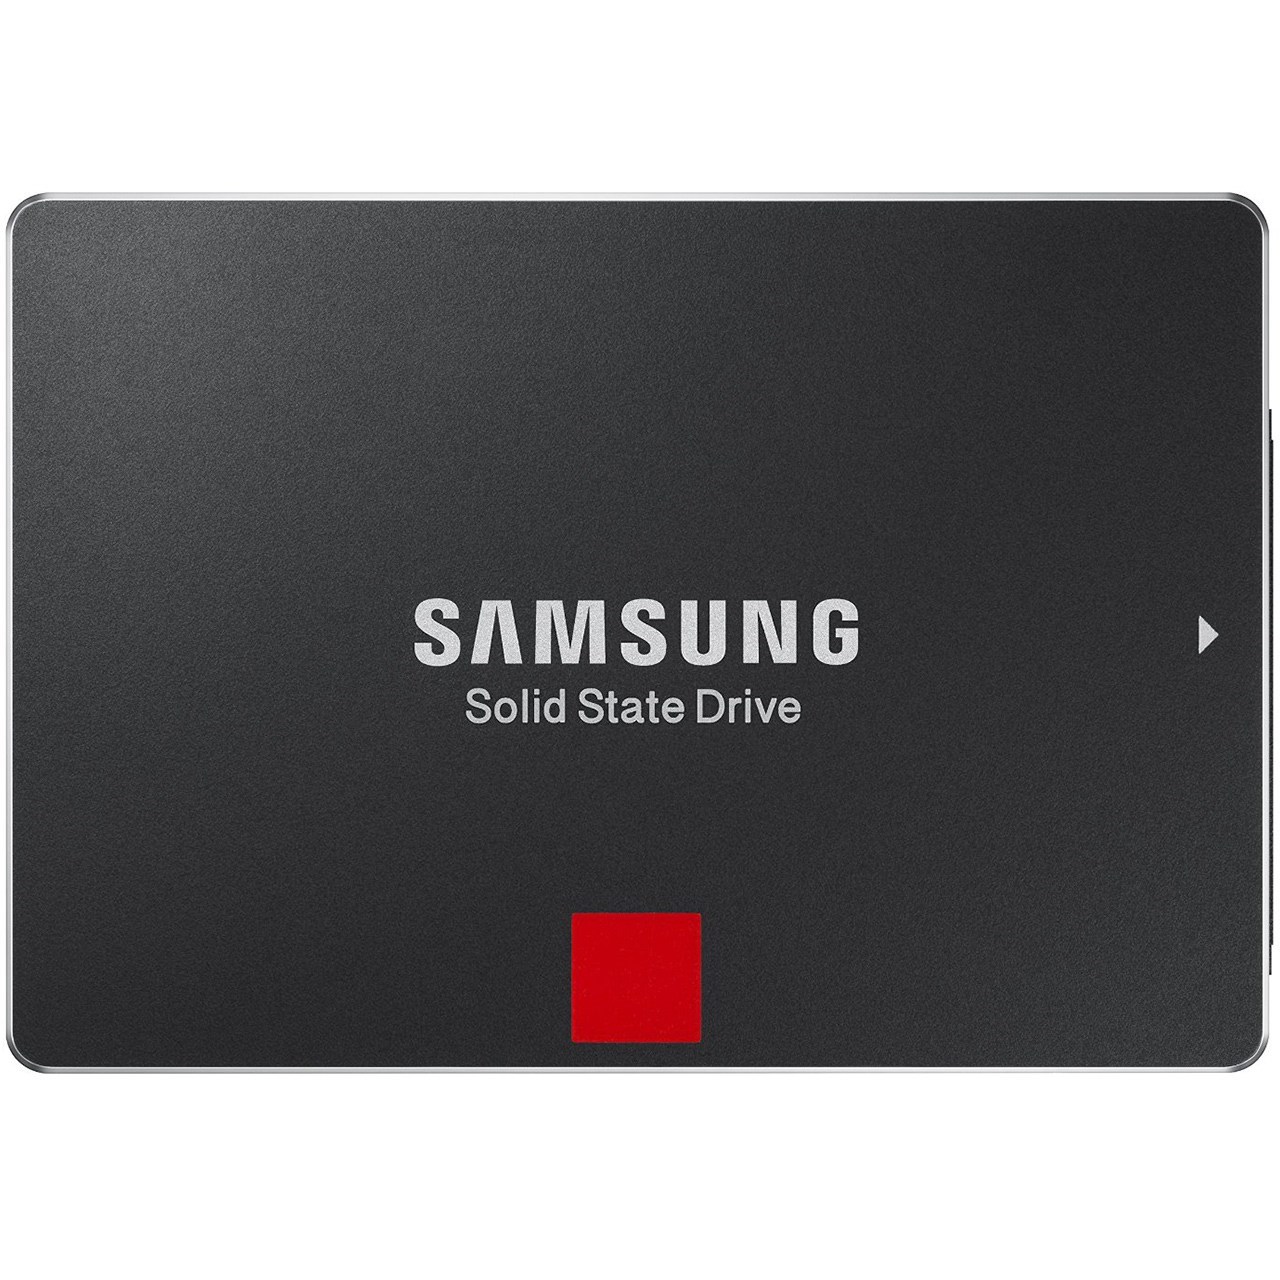 حافظه SSD سامسونگ مدل 850 پرو ظرفیت 128 گیگابایت